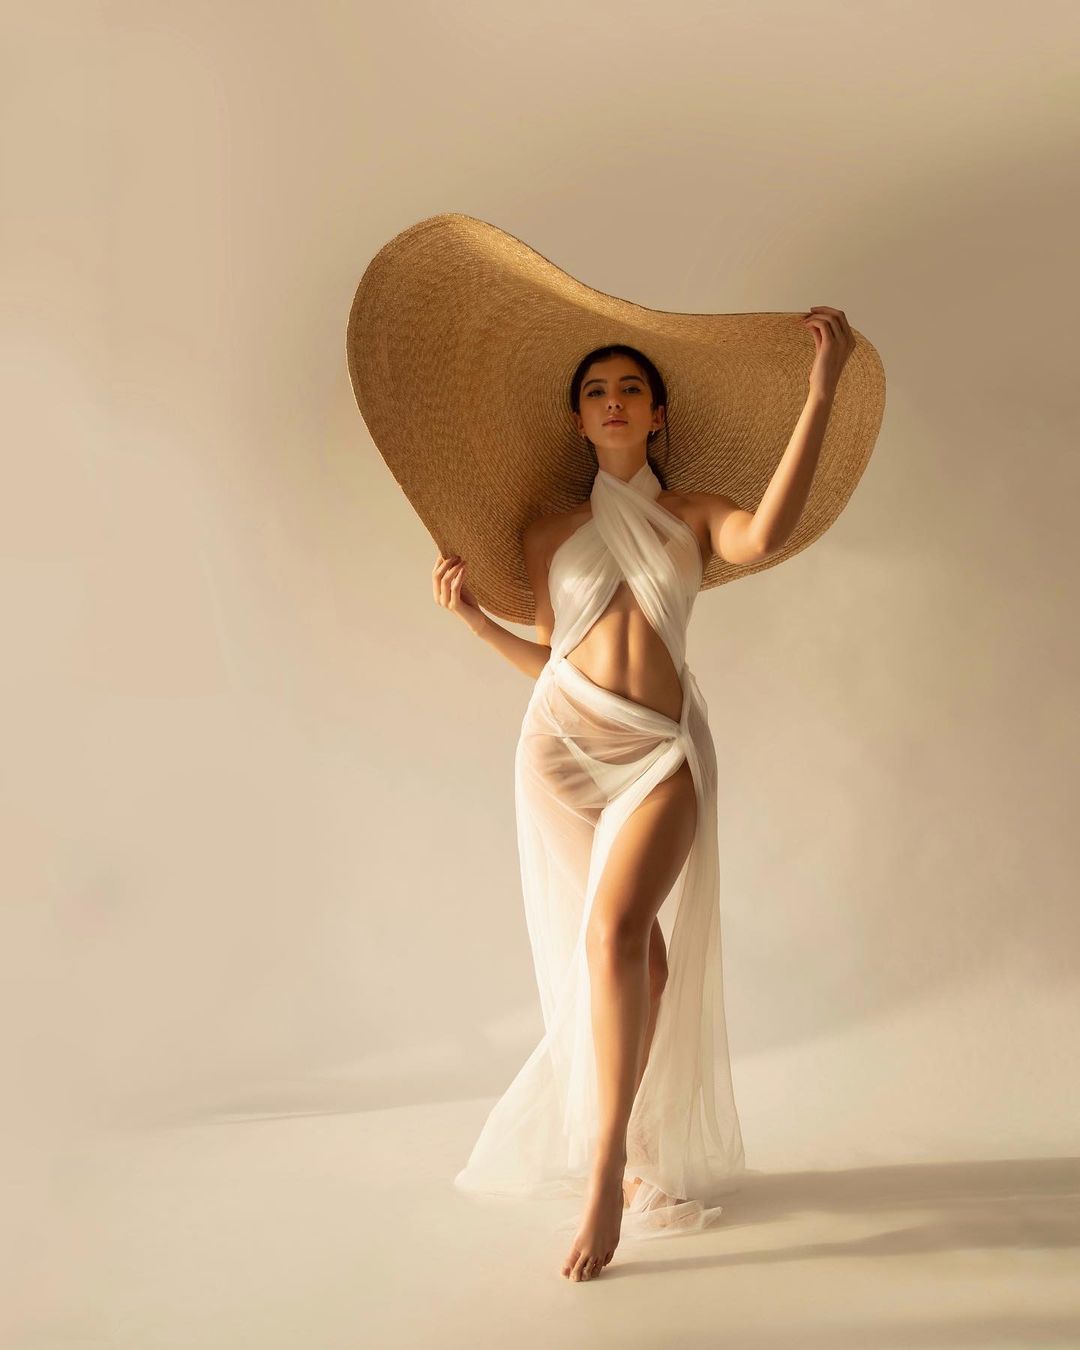 Shanaya Kapoor's Mexican photoshoot